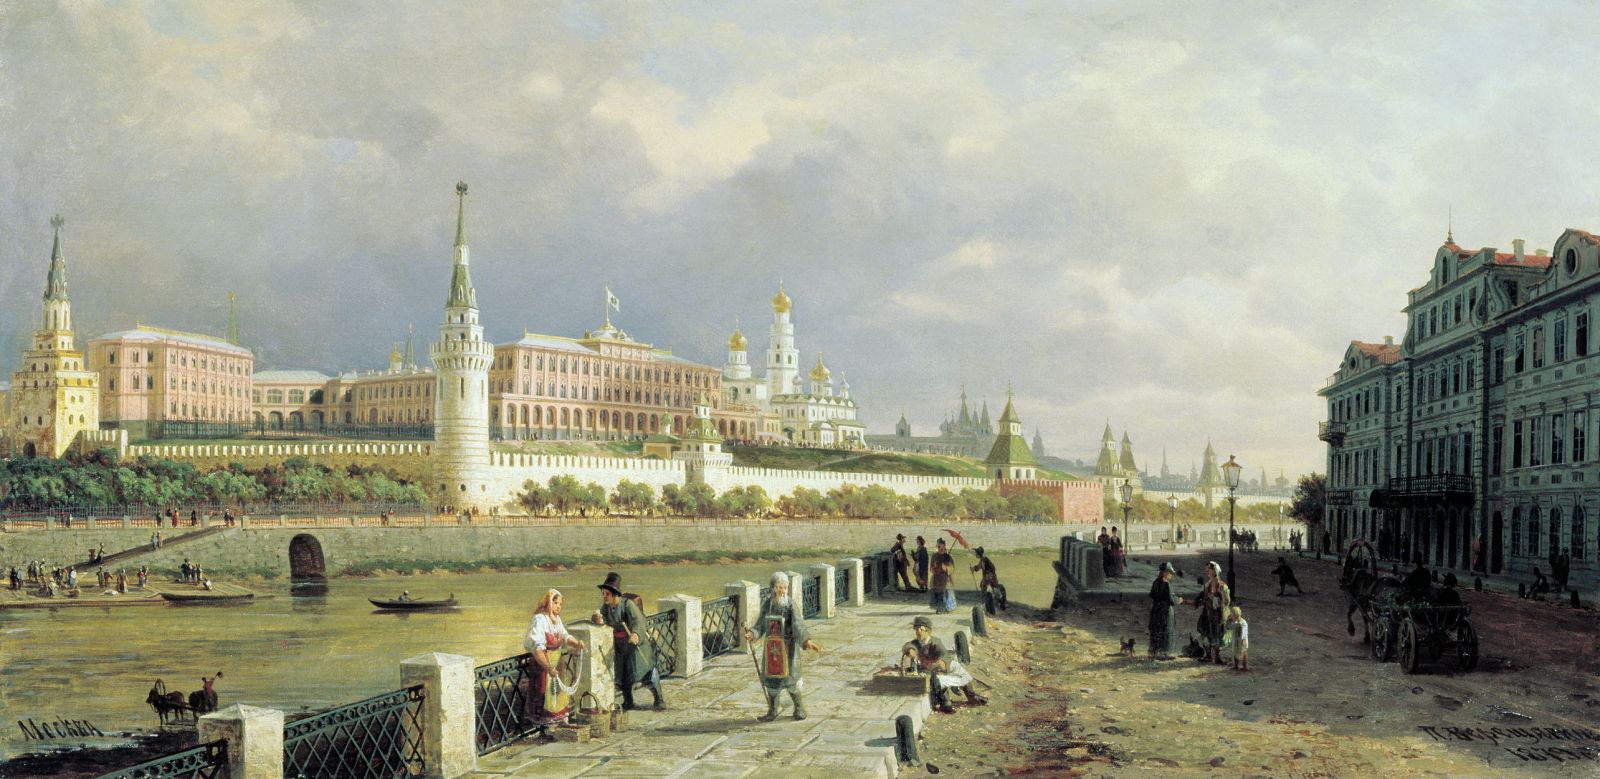 Архитектура начала 18 века в россии